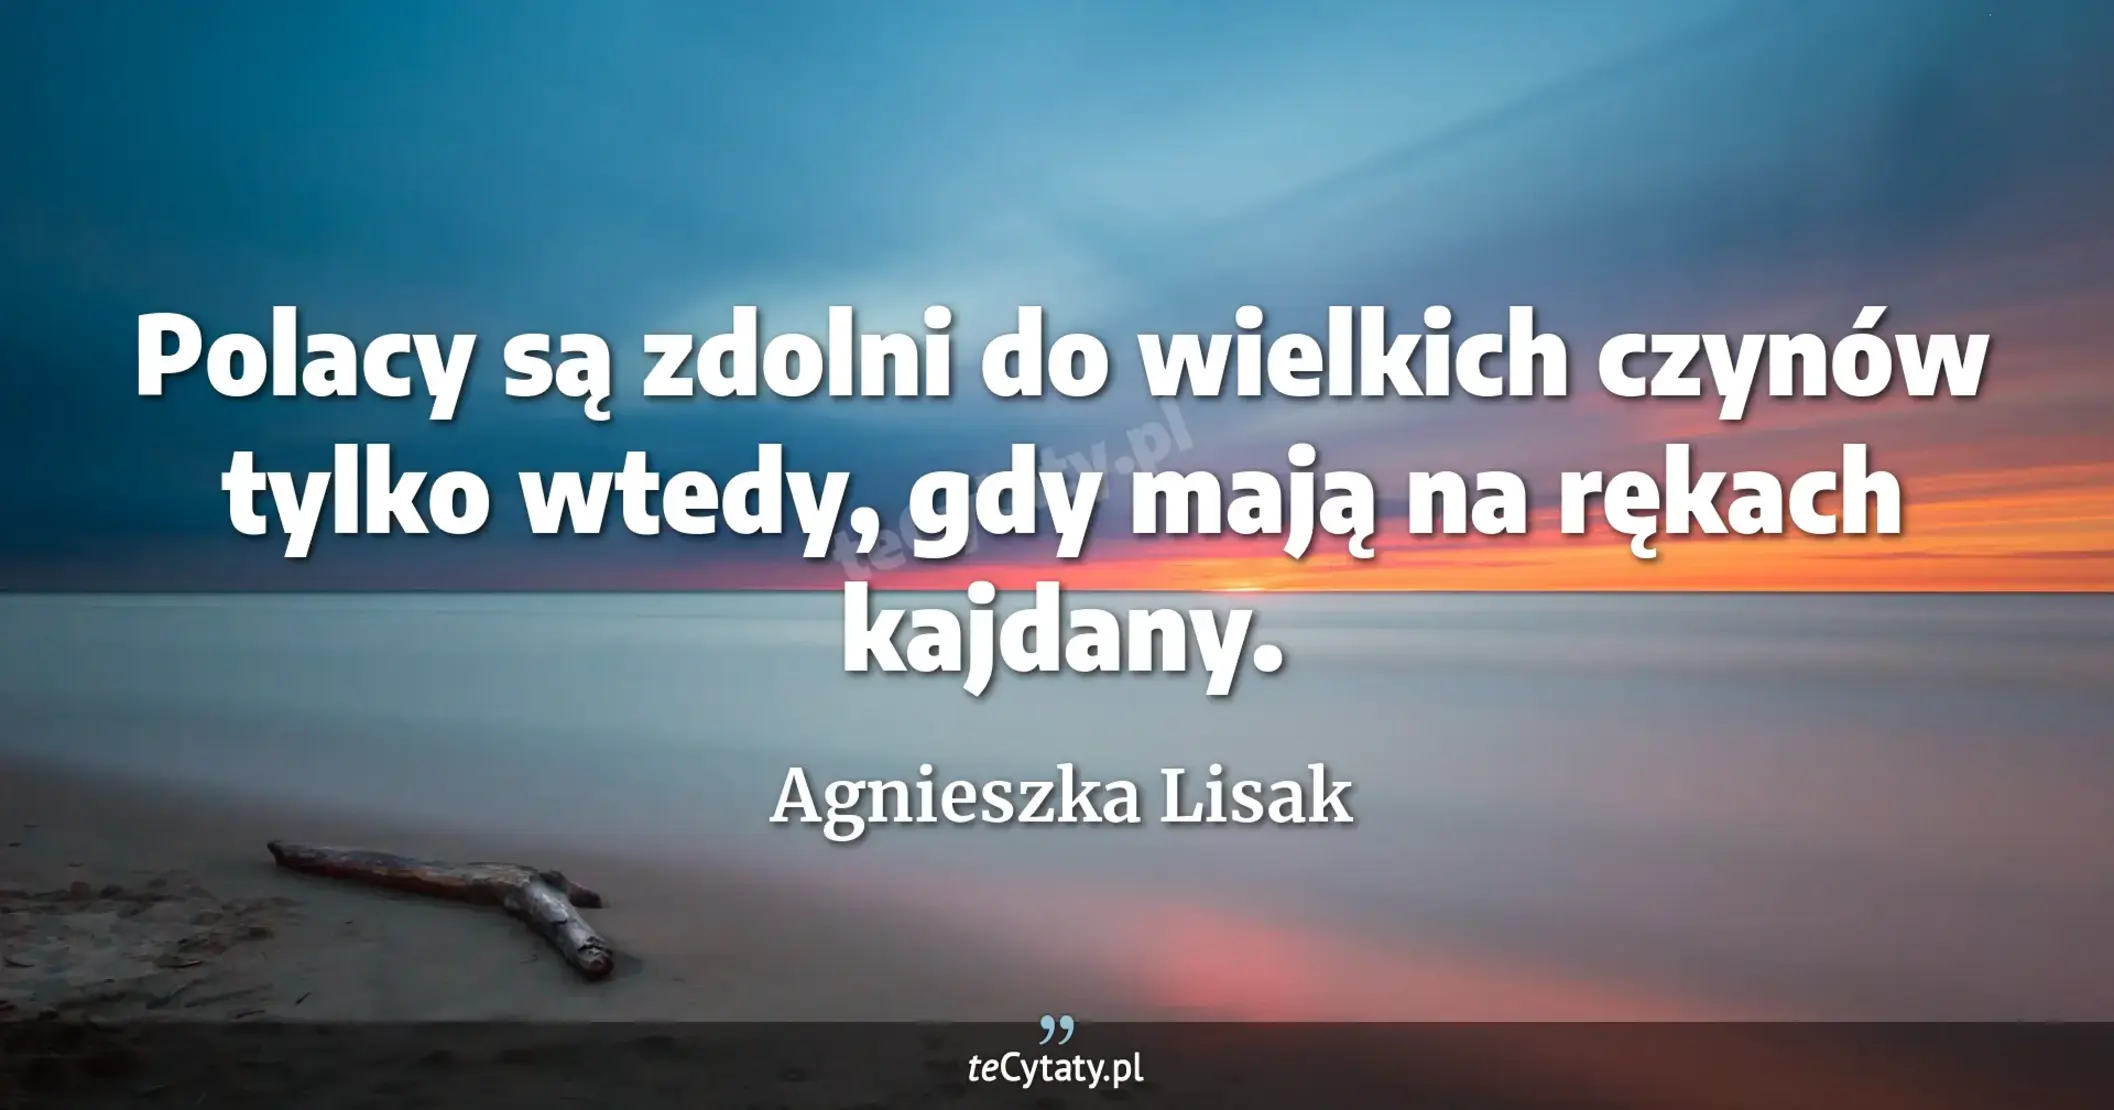 Polacy są zdolni do wielkich czynów tylko wtedy, gdy mają na rękach kajdany. - Agnieszka Lisak